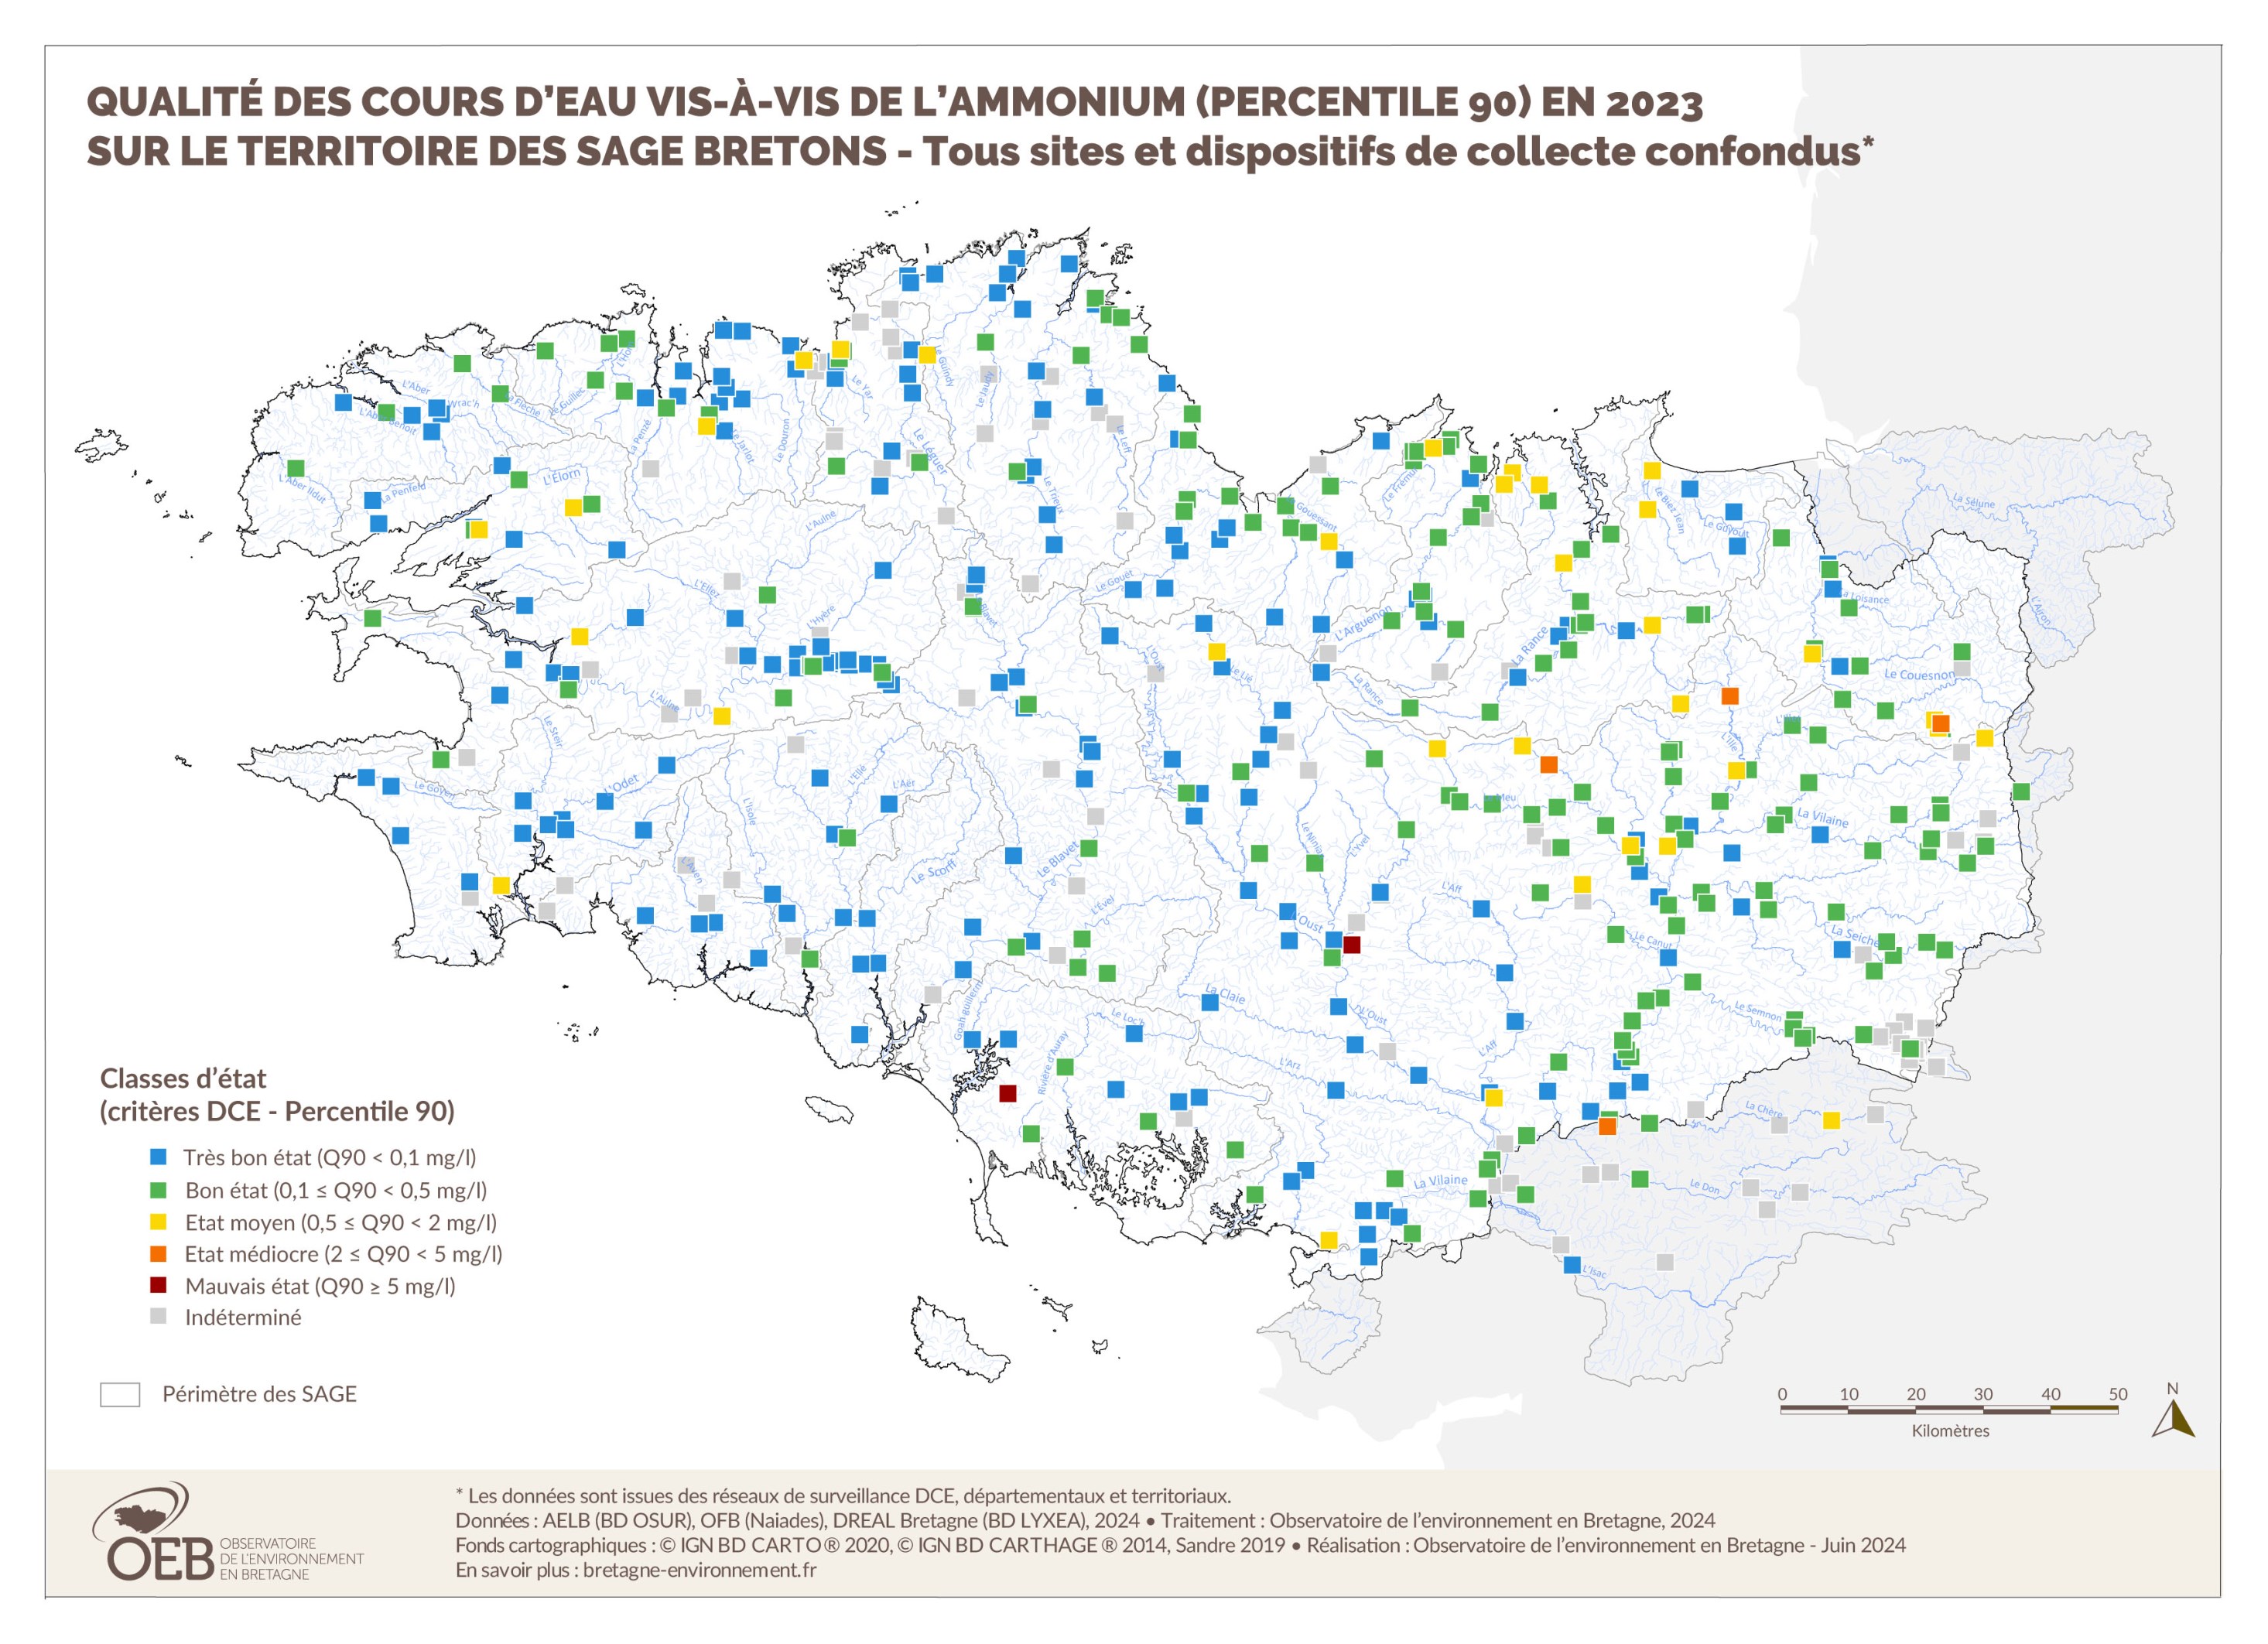 Qualité des cours d'eau bretons vis-à-vis de l'ammonium (Q90) en 2023